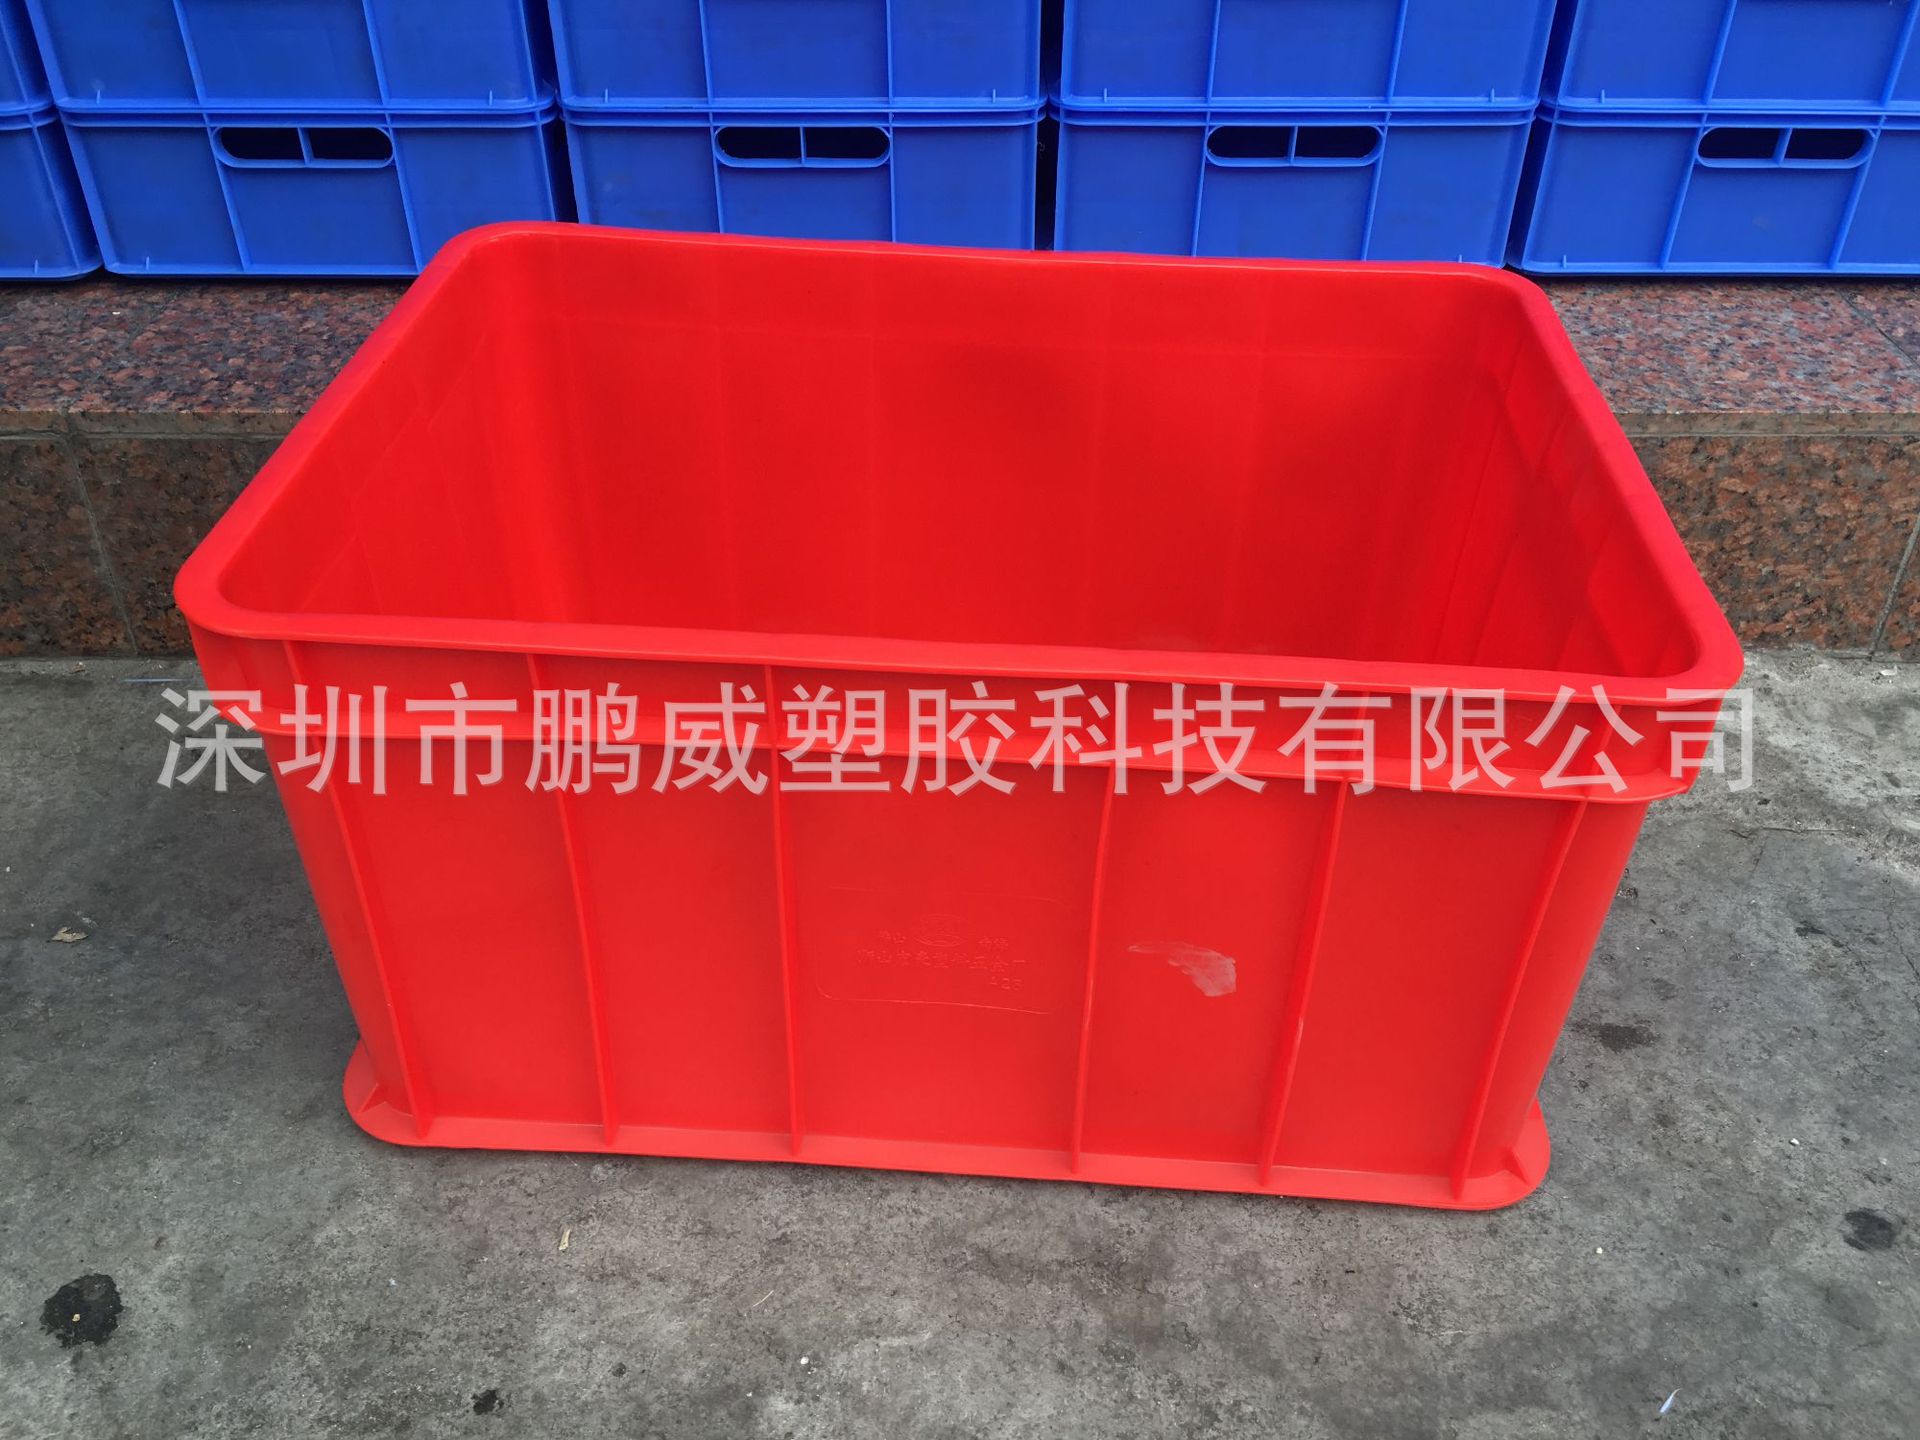 环保级红色周转箱 加厚耐磨 五金制品通用流水线分类箱 可四面烫